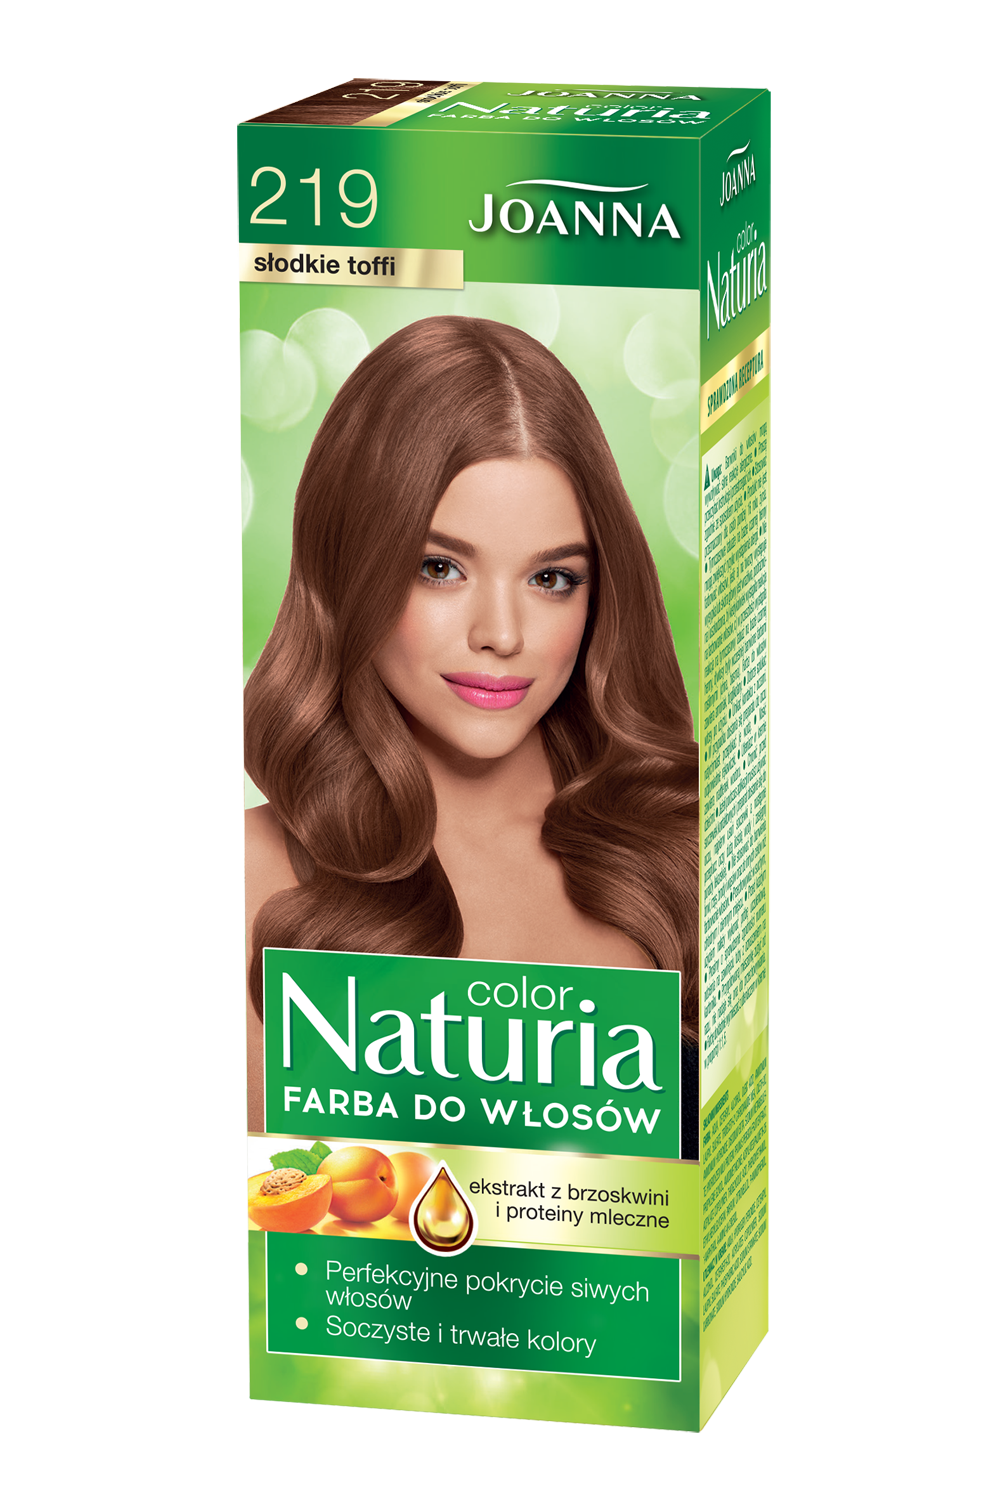 Farba do włosów Joanna Naturia Color w odcieniu nr 219 słodkie toffi